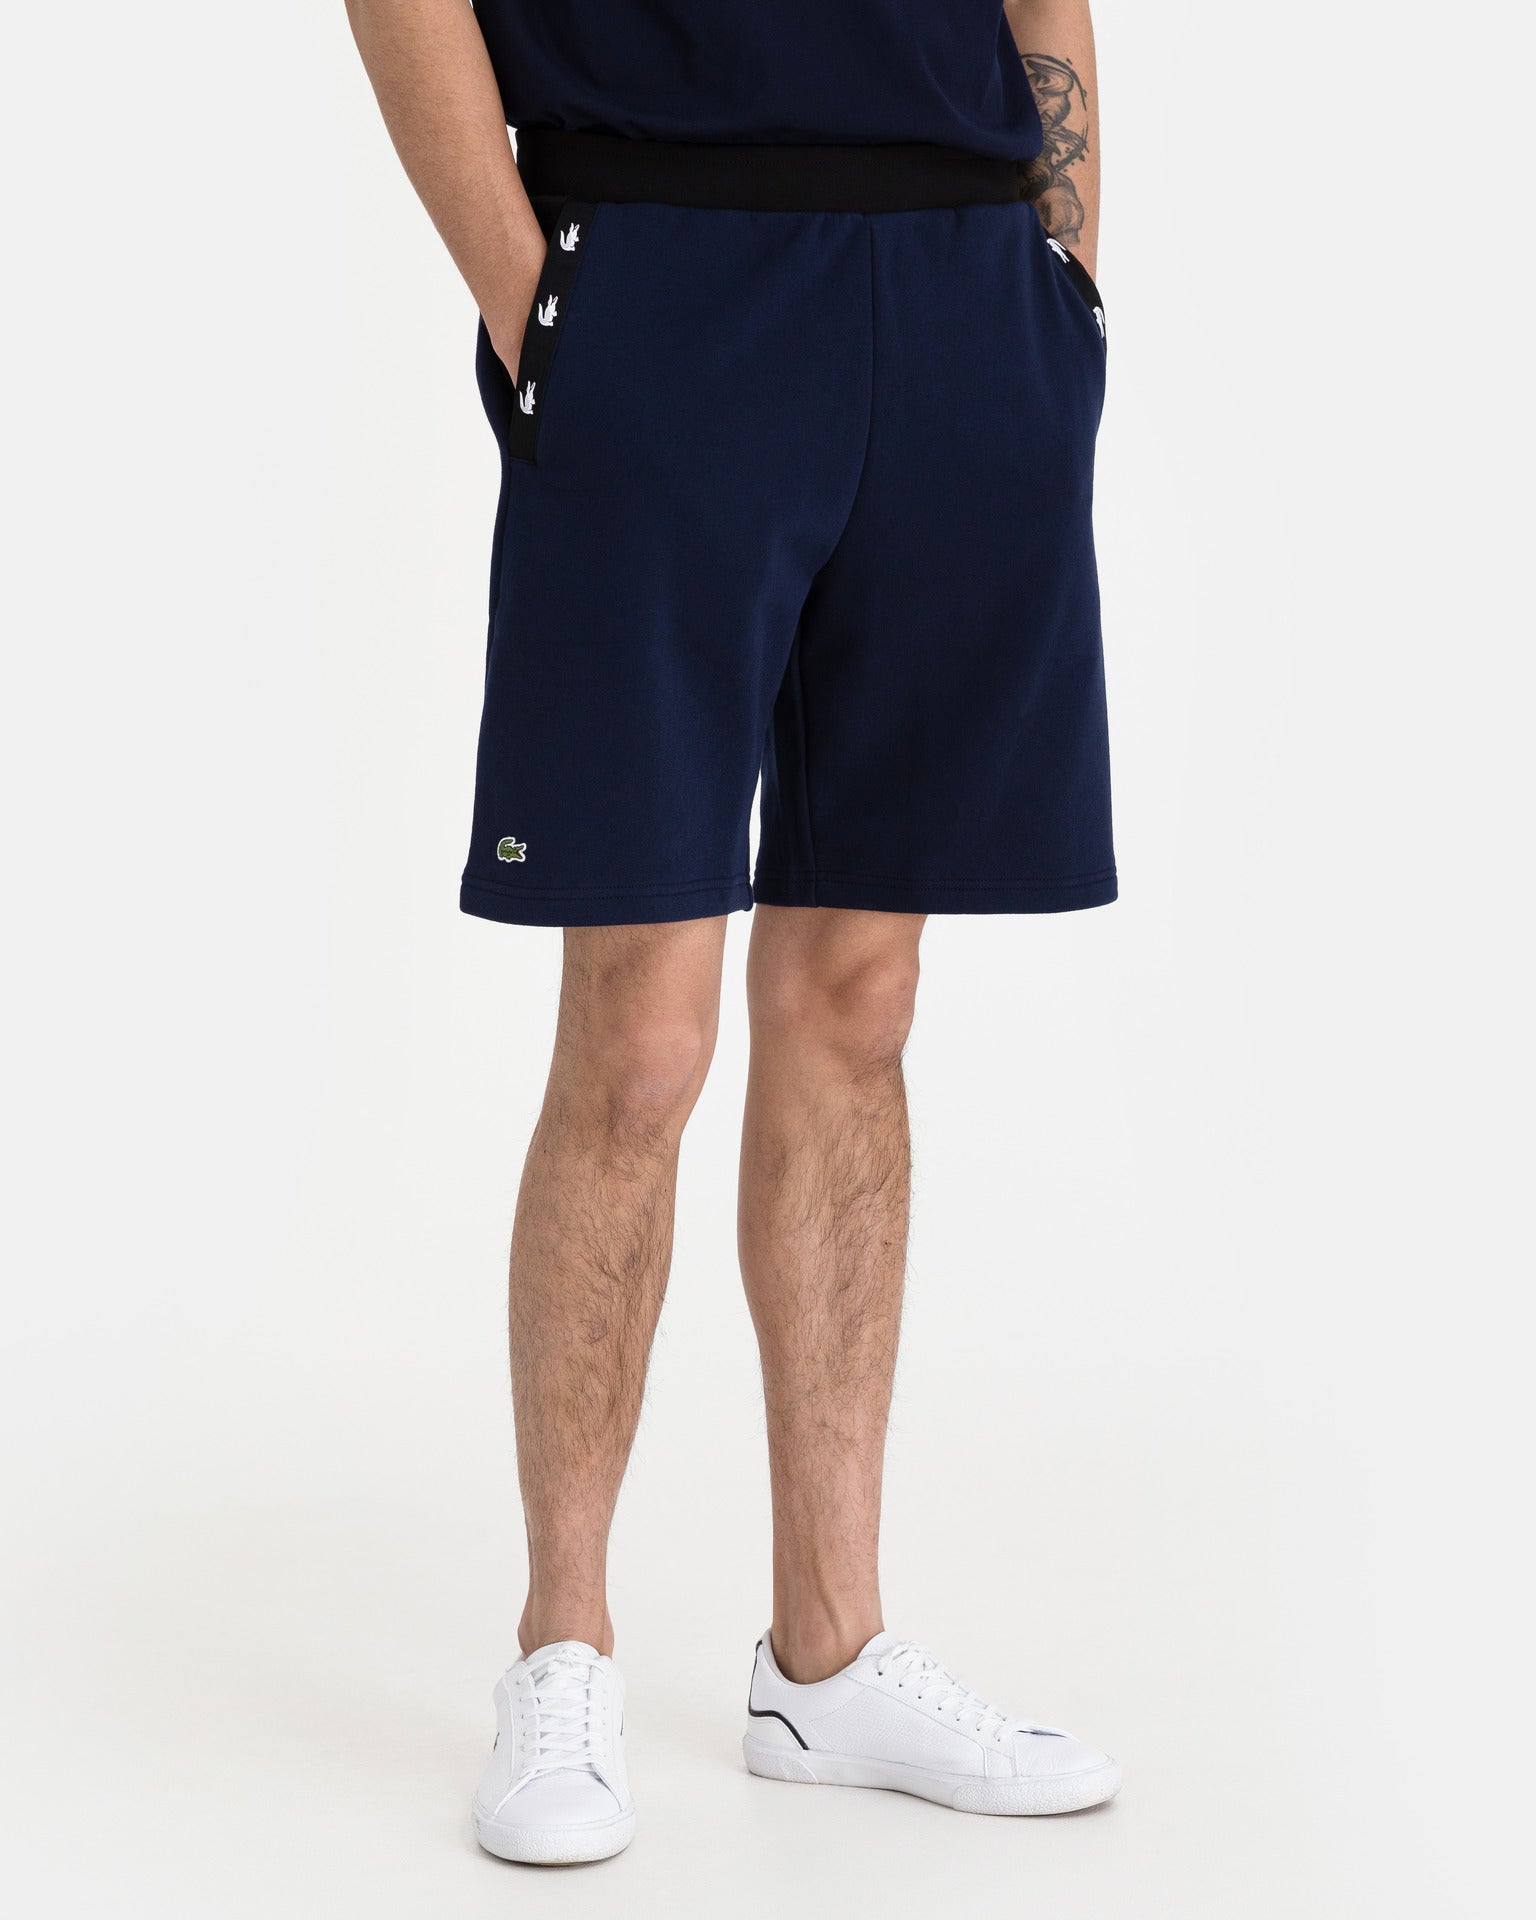 Lacoste Tennis Shorts - Civilized - Official Site